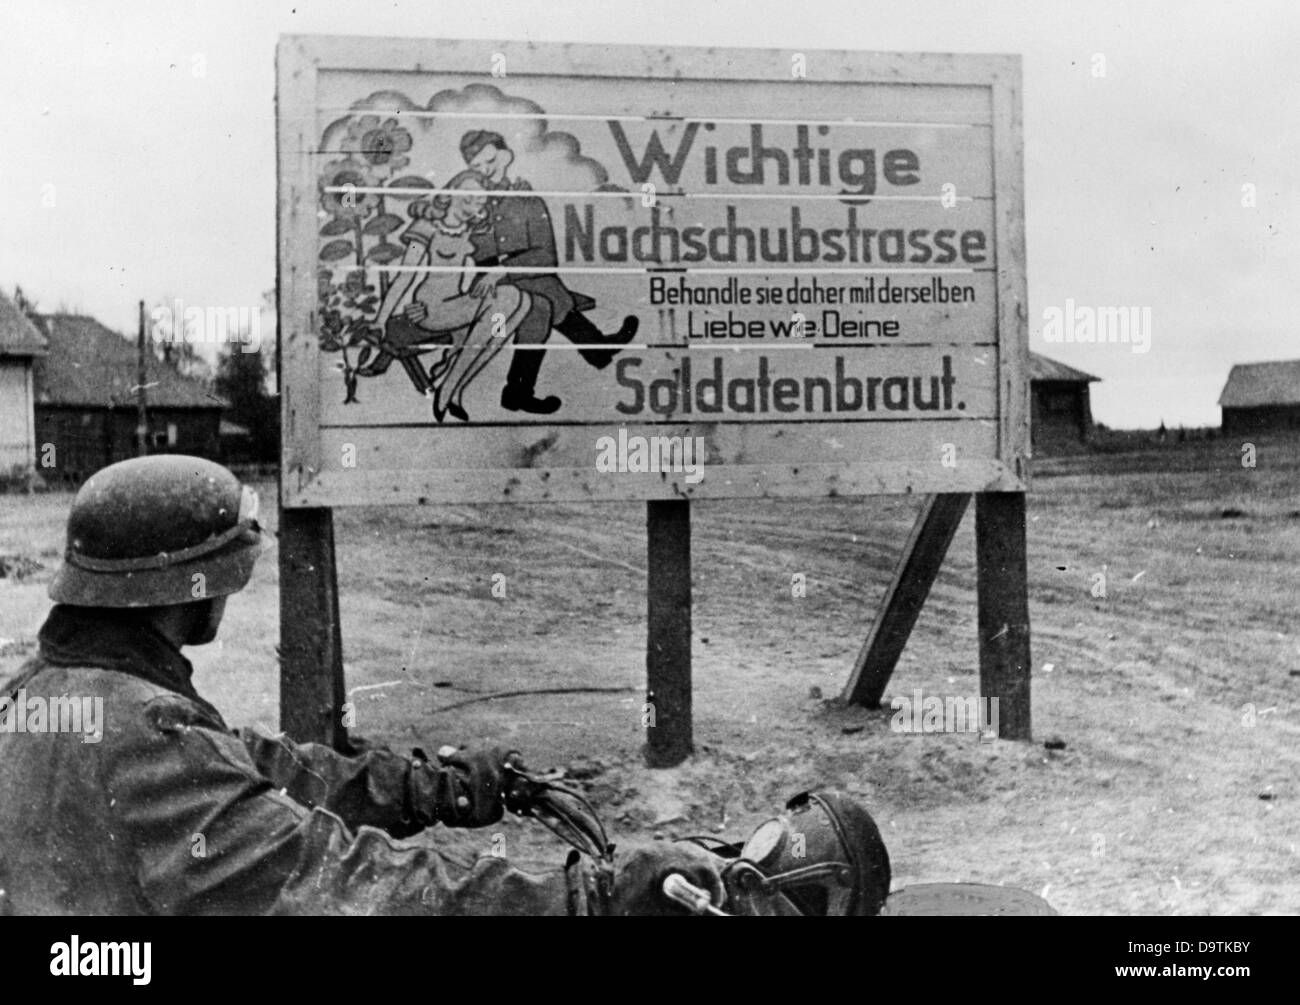 Un chauffeur de la Wehmacht allemand est représenté avec sa moto devant un panneau "route d'approvisionnement importante. La traiter avec le même amour que votre épouse du soldat." Image à partir du front de l'Est, publié le 9 juillet 1942. La Propagande nazie ! Sur l'arrière de l'image se lit comme suit : "l'indestructible soldats" l'humour est exprimée dans les panneaux d'avertissement le long de la route à nos postes." L'attaque de la Russie par le Reich a été adoptée en juillet 1940 et préparé depuis décembre 1940 sous le nom de l'opération "Barbarossa". Le 22 juin 1941, l'invasion de l'Union soviétique par la Wehrmacht allemande a commencé. Photo : Ber Banque D'Images